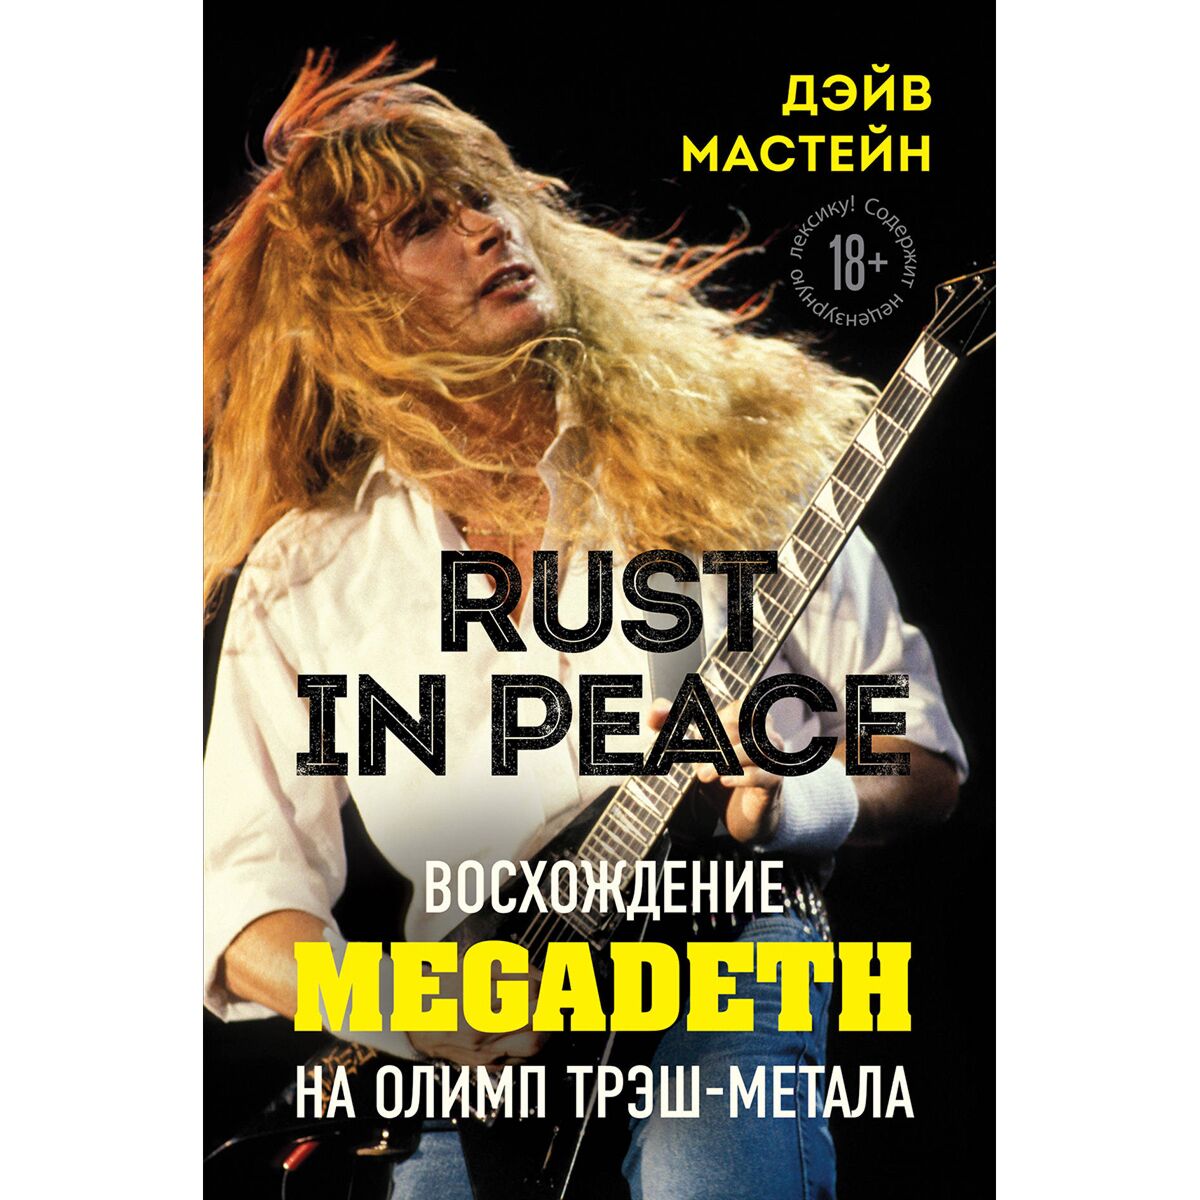 Rust in peace это фото 68